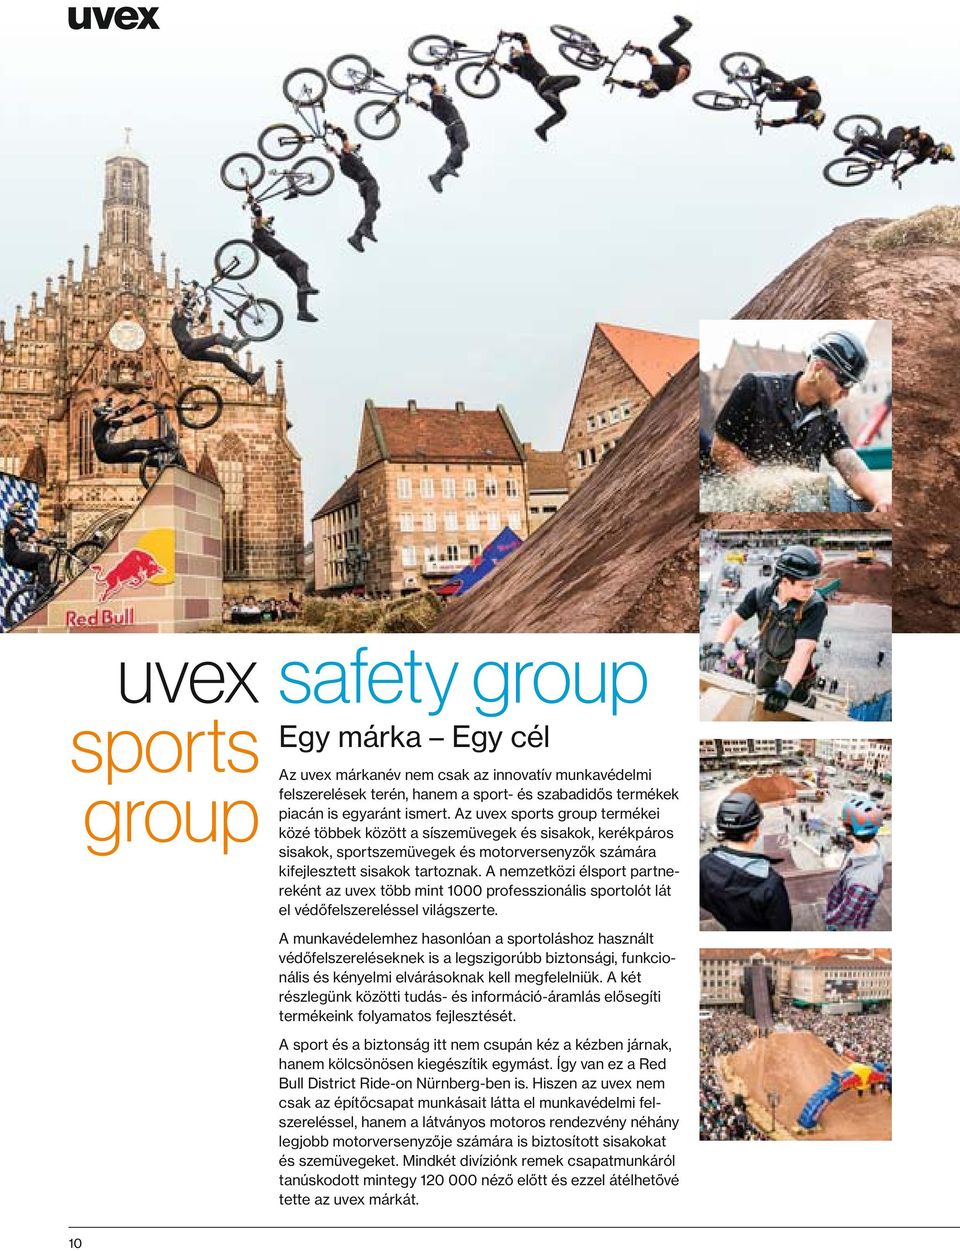 A nemzetközi élsport partnereként az uvex több mint 1000 professzionális sportolót lát el védőfelszereléssel világszerte.